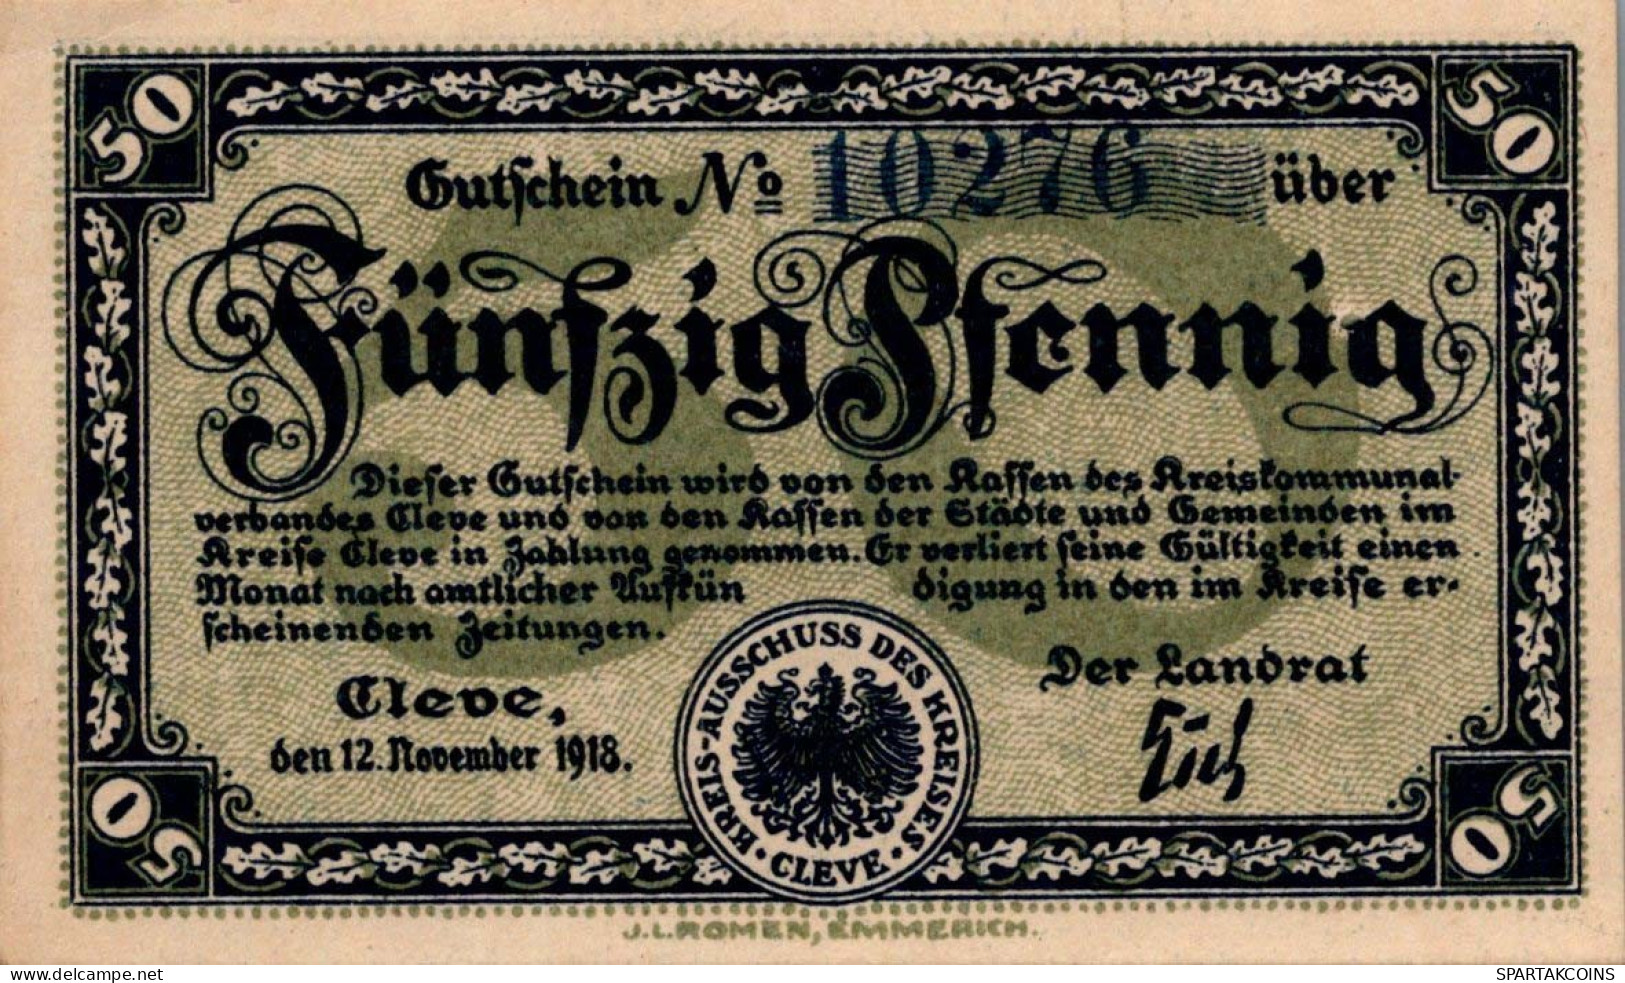 50 PFENNIG 1918 Stadt RHINE Rhine UNC DEUTSCHLAND Notgeld Banknote #PH155 - [11] Local Banknote Issues